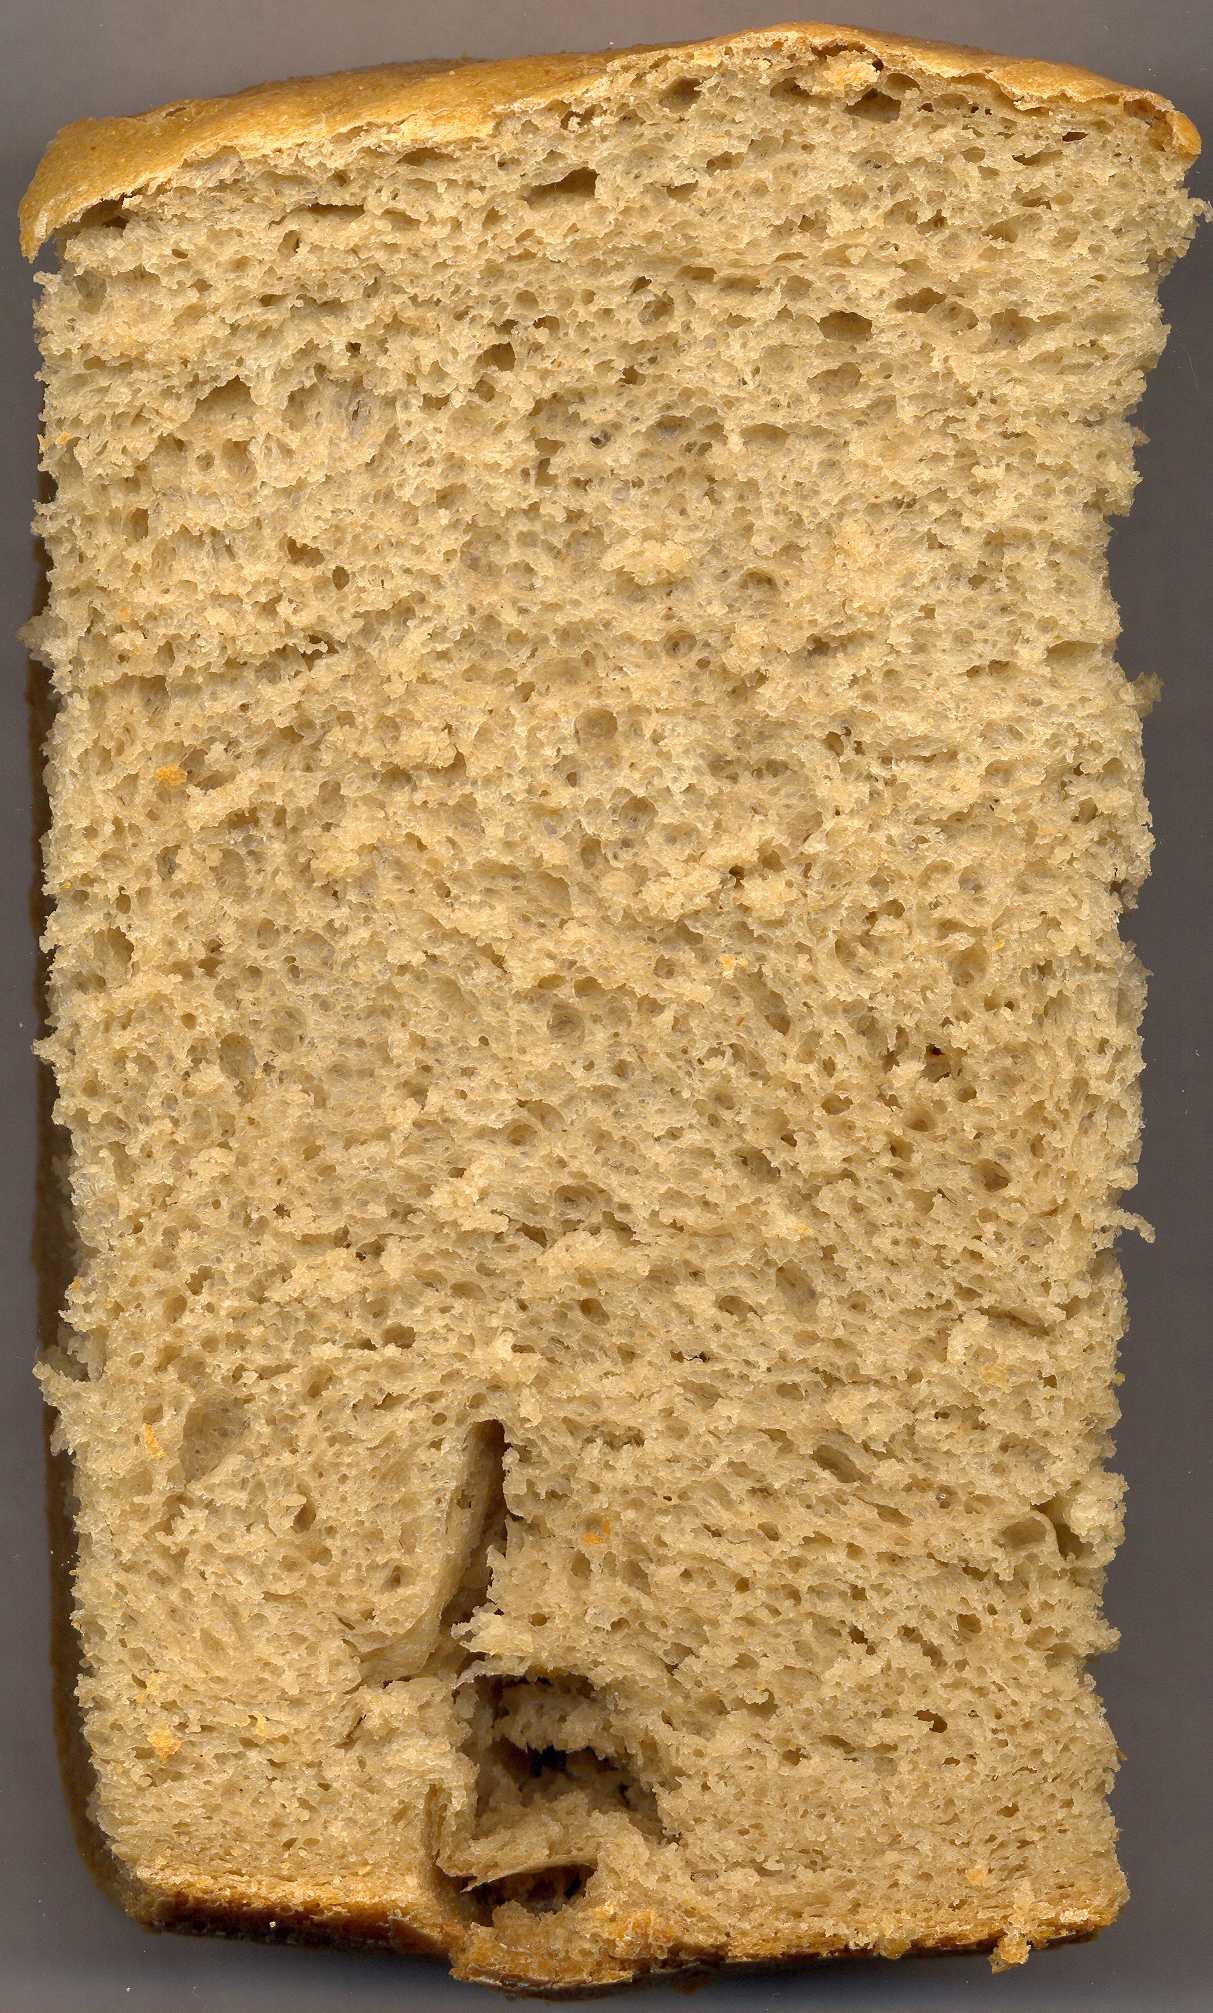 LG HB-1051. Wheat-oat-buckwheat bread